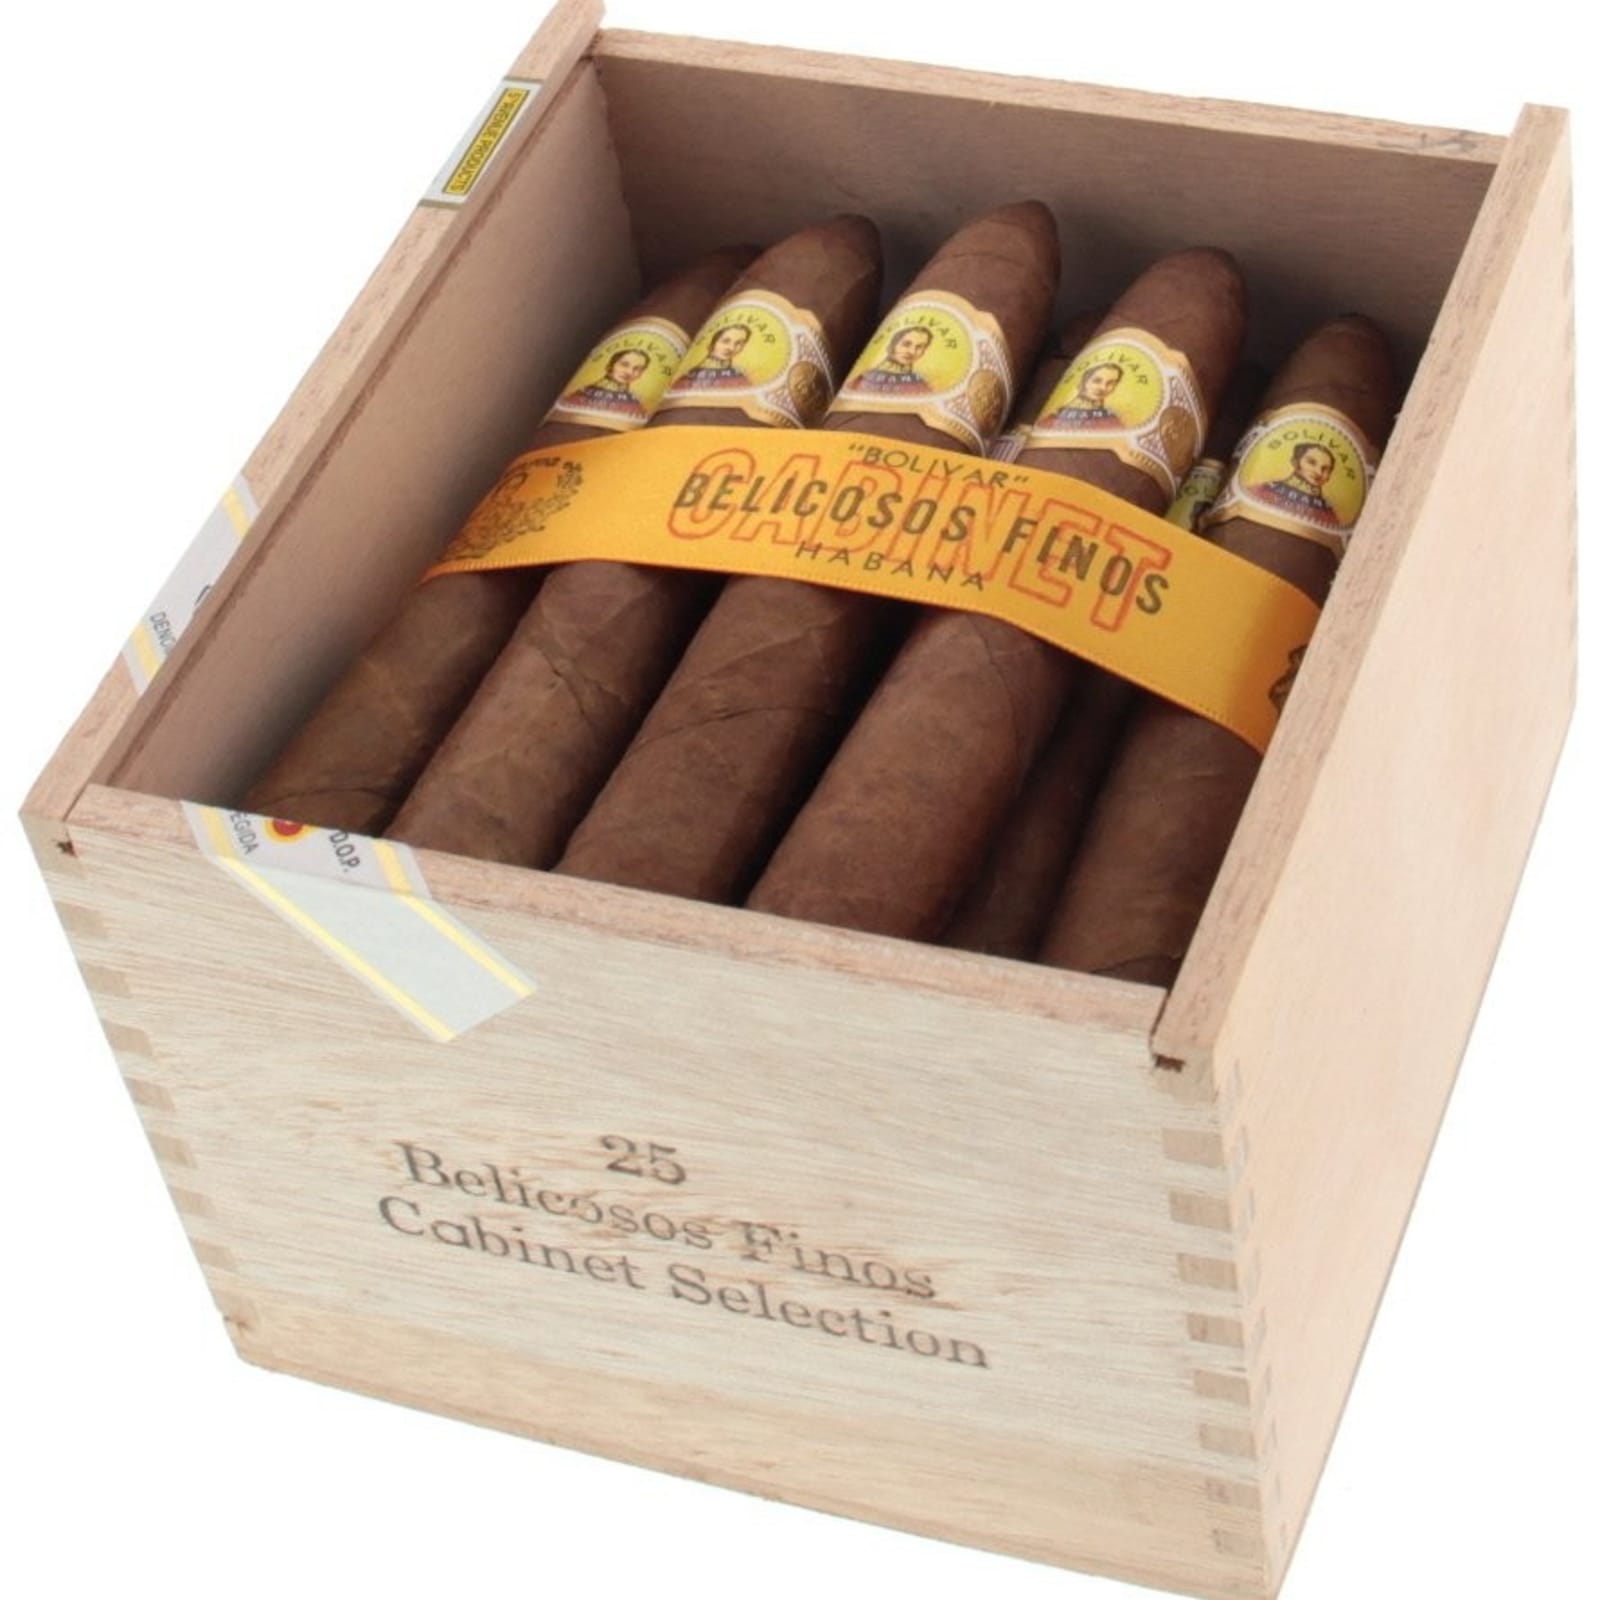 Bolivar Belicosos Finos Zigarre im Belicosos Format 25er Zigarrenbox slide geöffnet